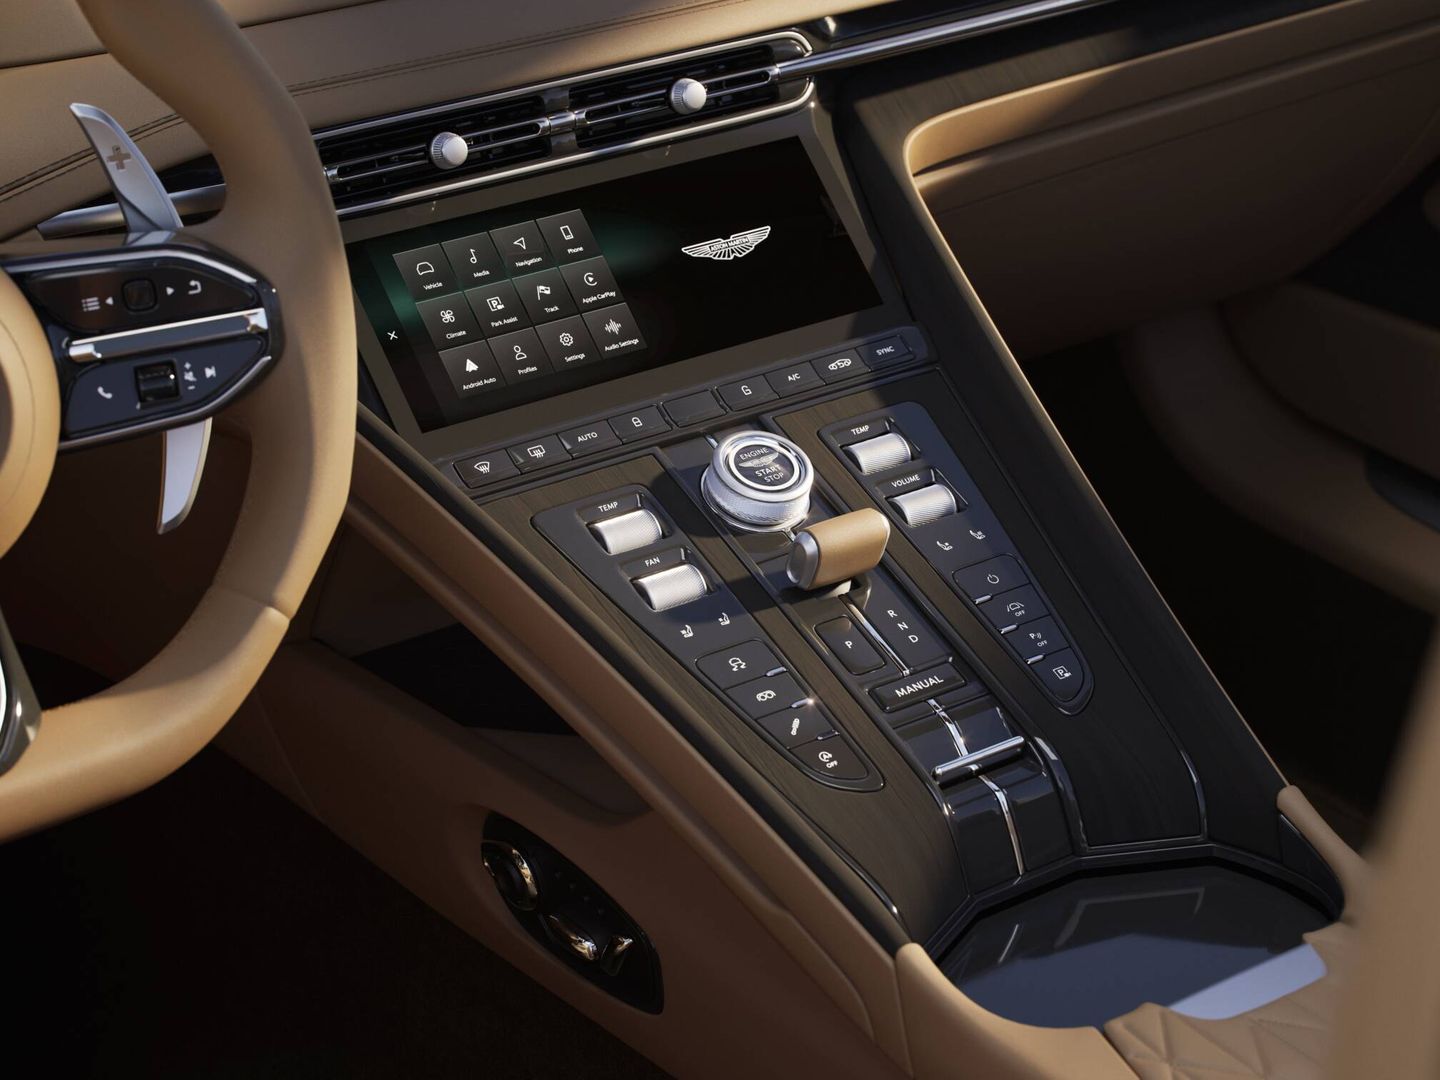 La pantalla táctil concentra muchas funciones, pero Aston Martin conserva también mandos tradicionales.